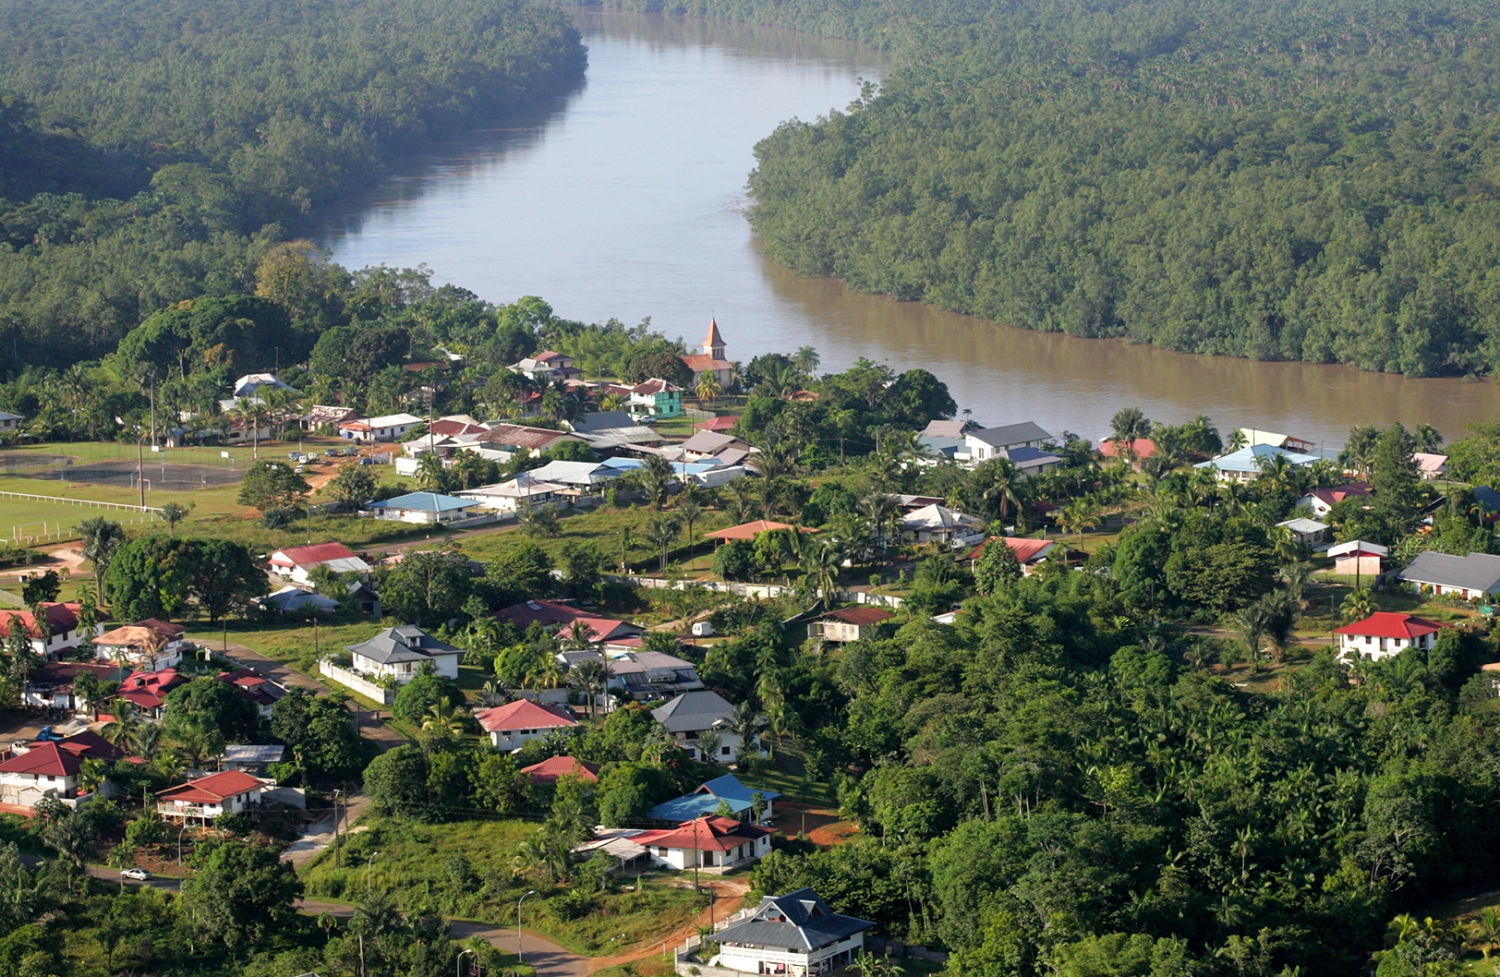 La Guyane, territoire du satellitaire à plus d'un titre